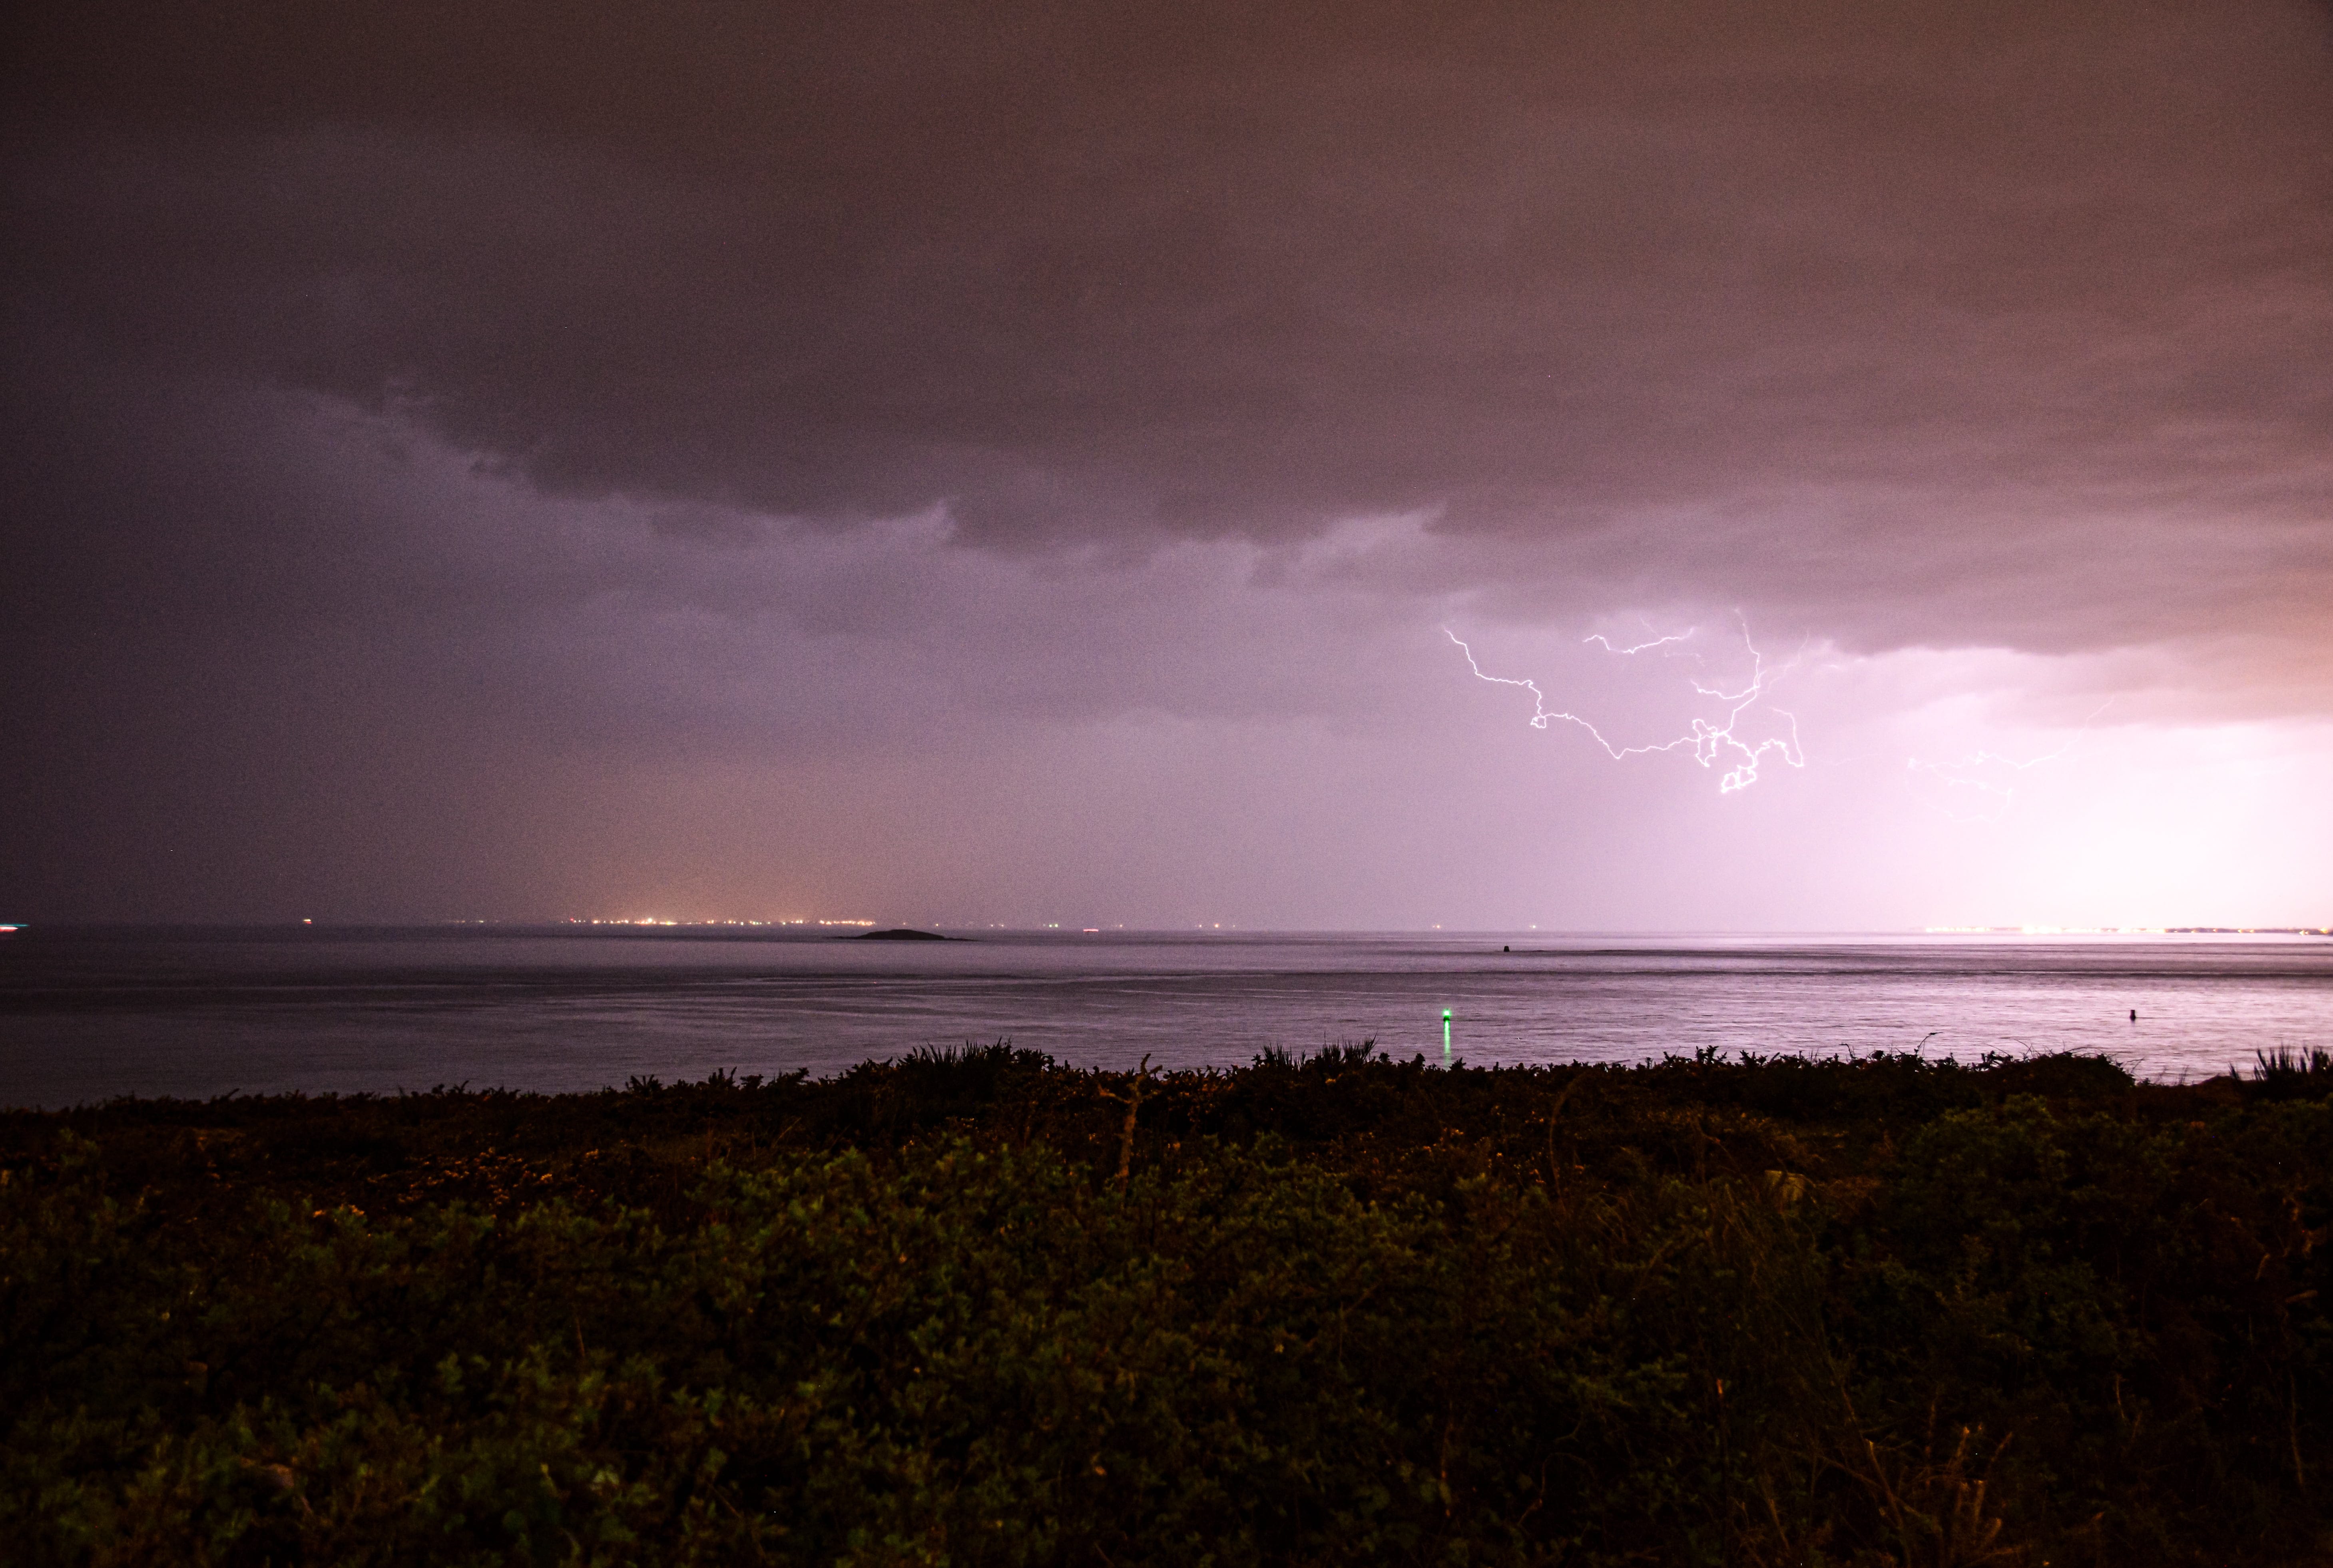 Orage sur le presqu’île de Quiberon ce 11 avril 2022 à la tombée de la nuit. Début de saison assez timide, mais c’est ma première photo d’orage de l’année ! - 11/04/2022 23:40 - Jules Créteur